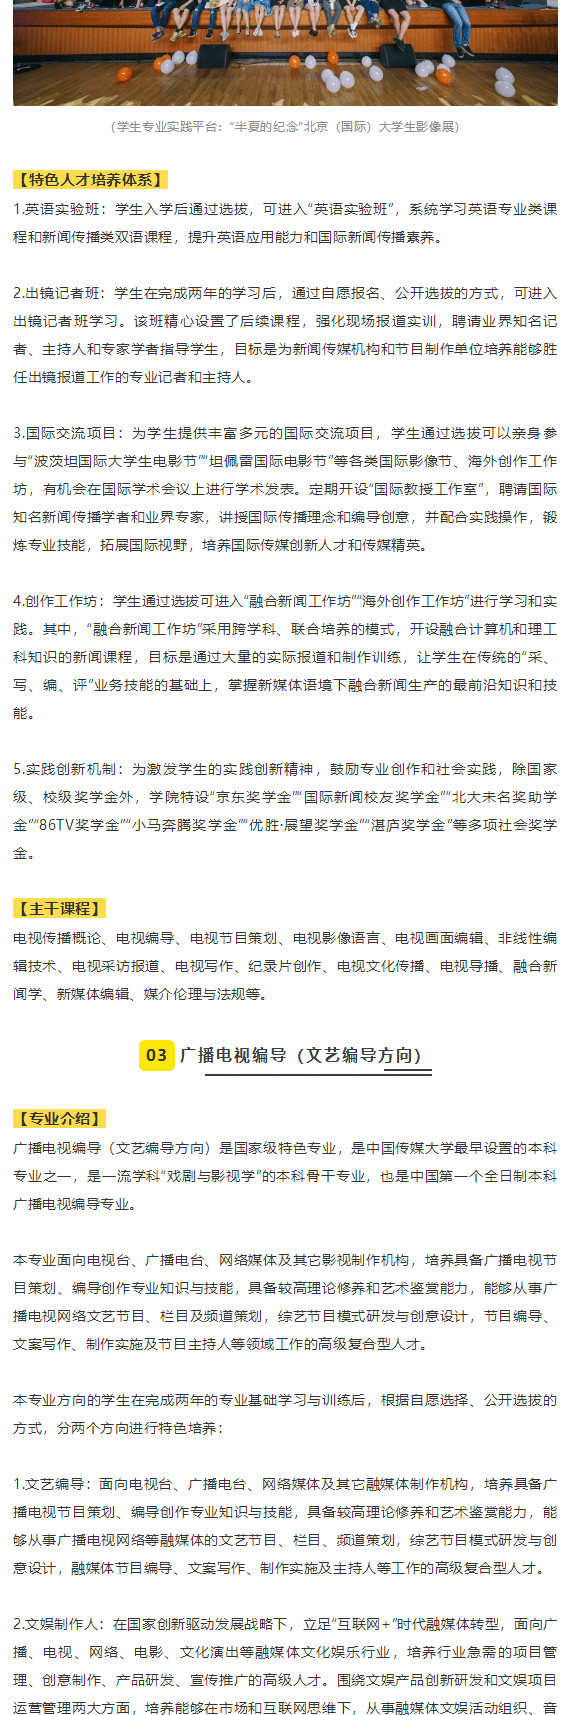 中国传媒大学2020年艺术类专业介绍_02.gif